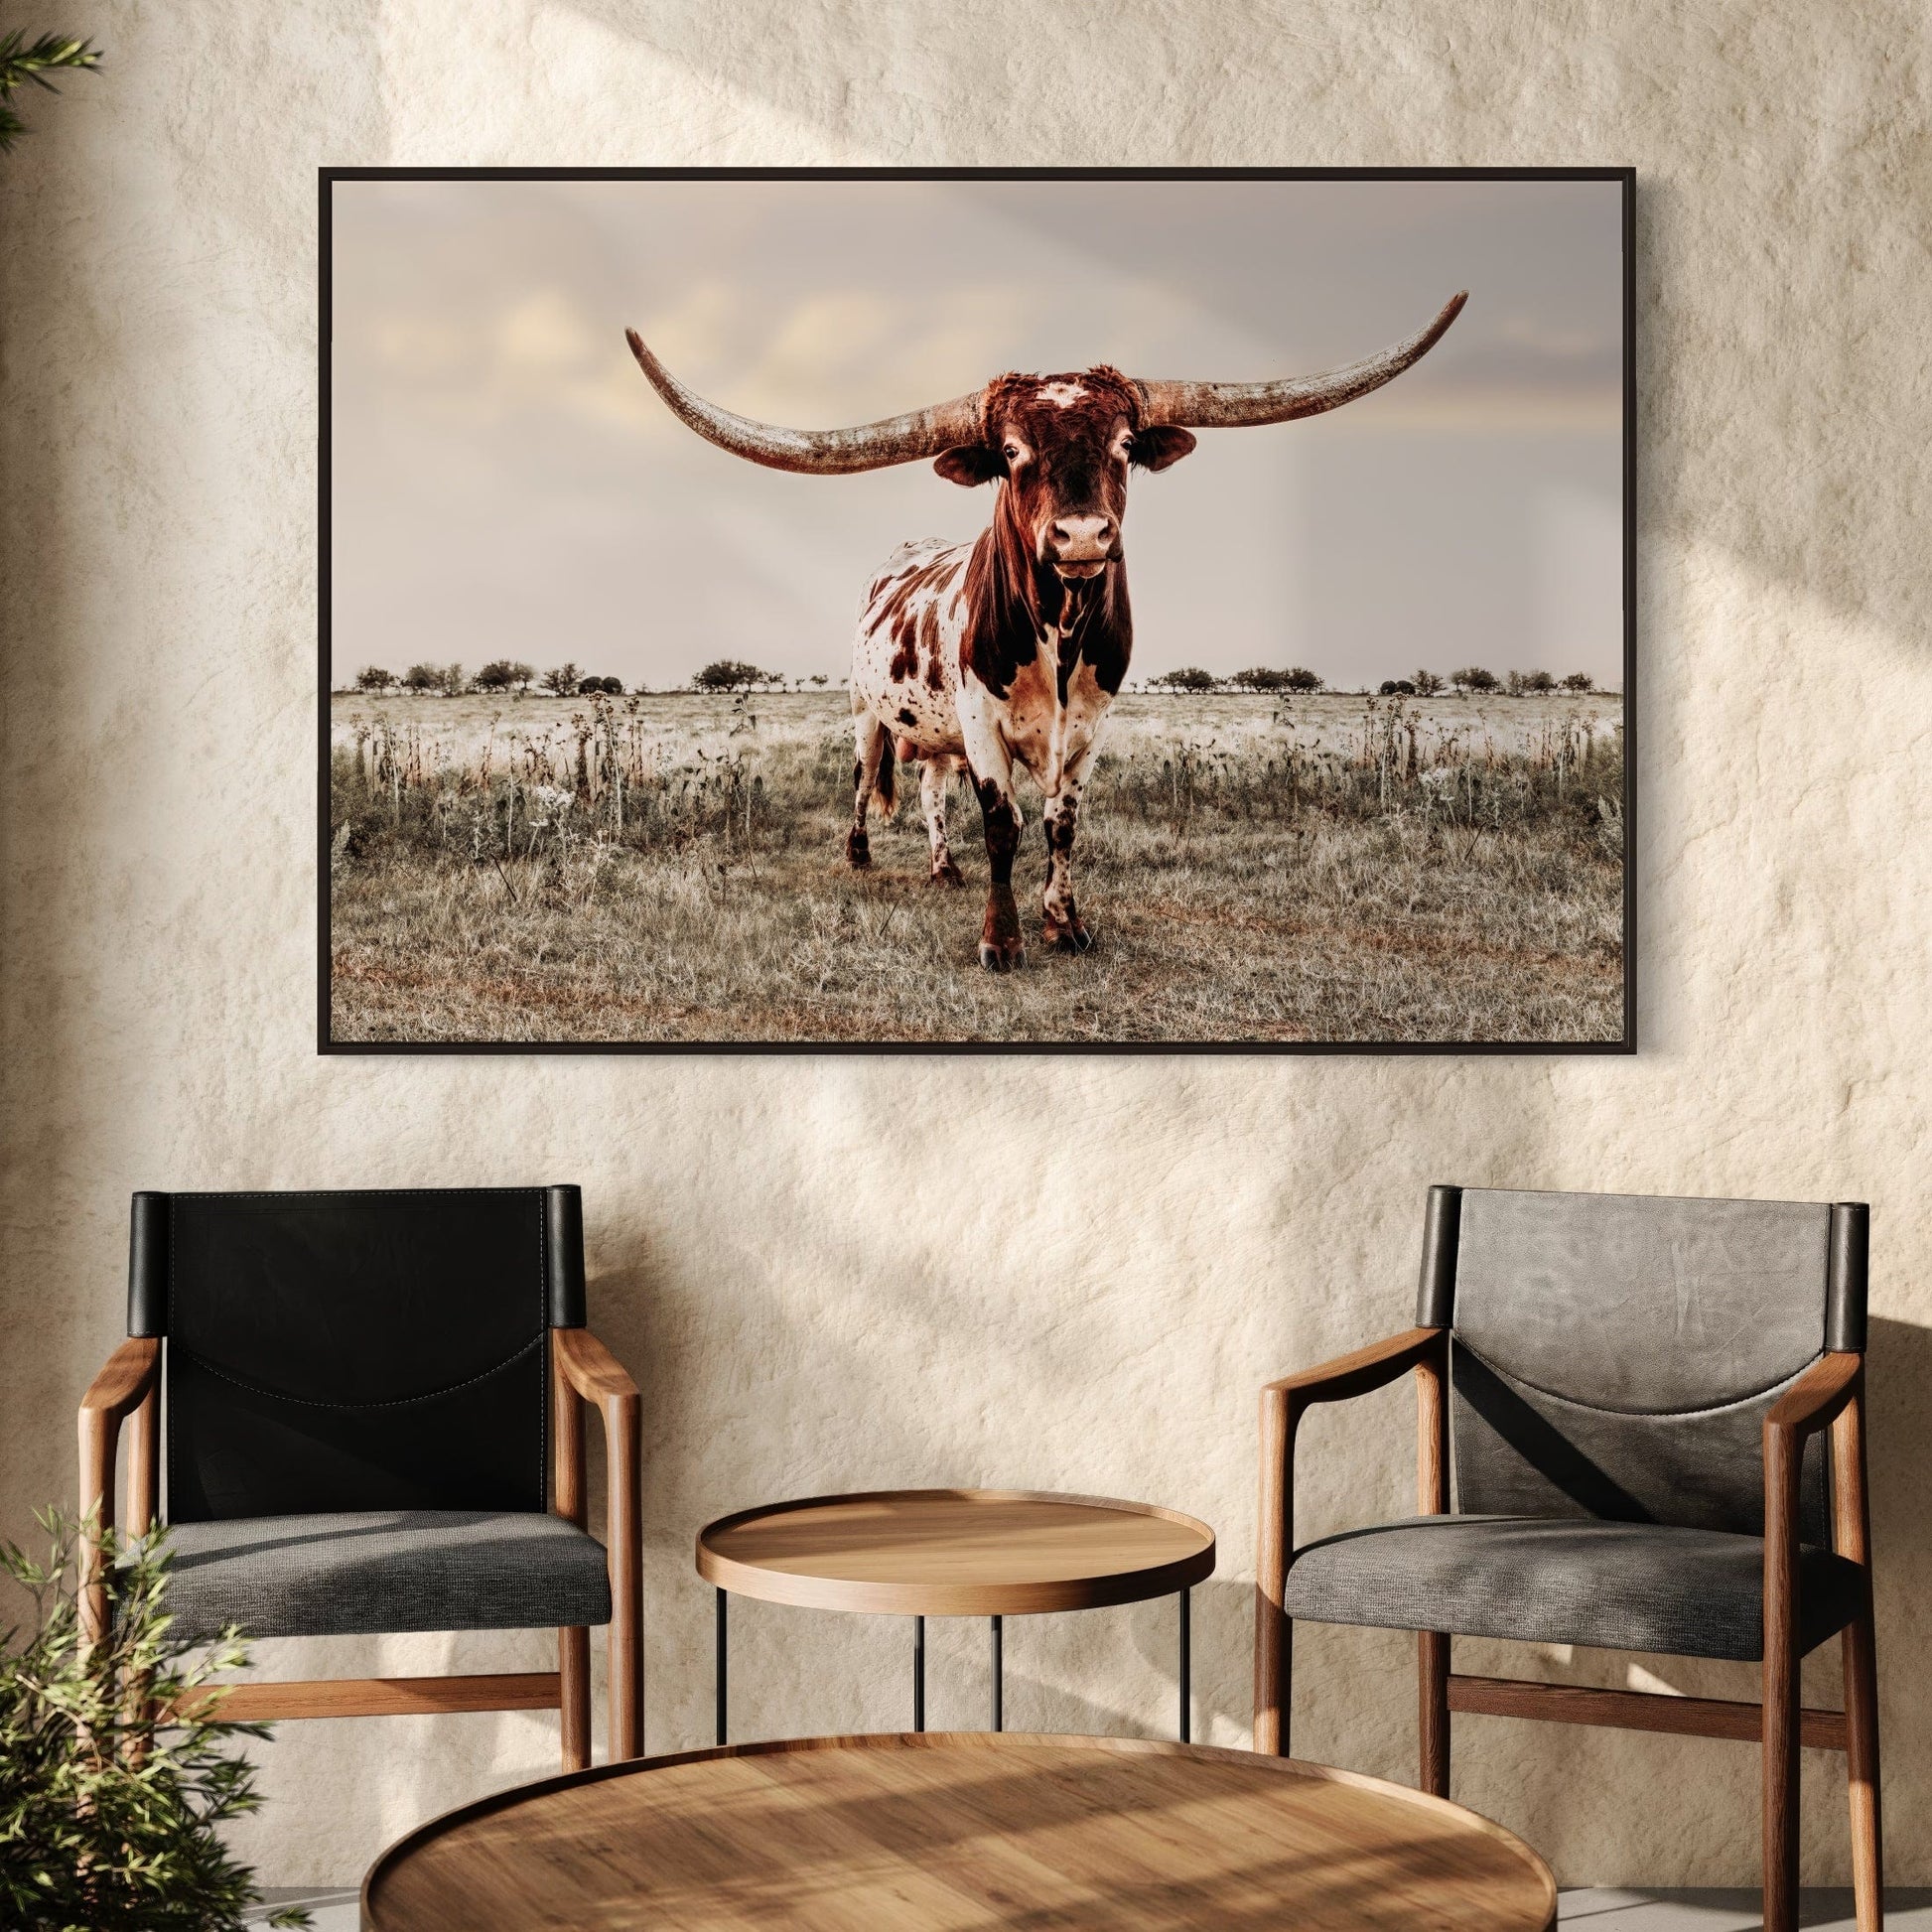 Texas Style Wall Decor - Longhorn bull Wall Art Teri James Photography